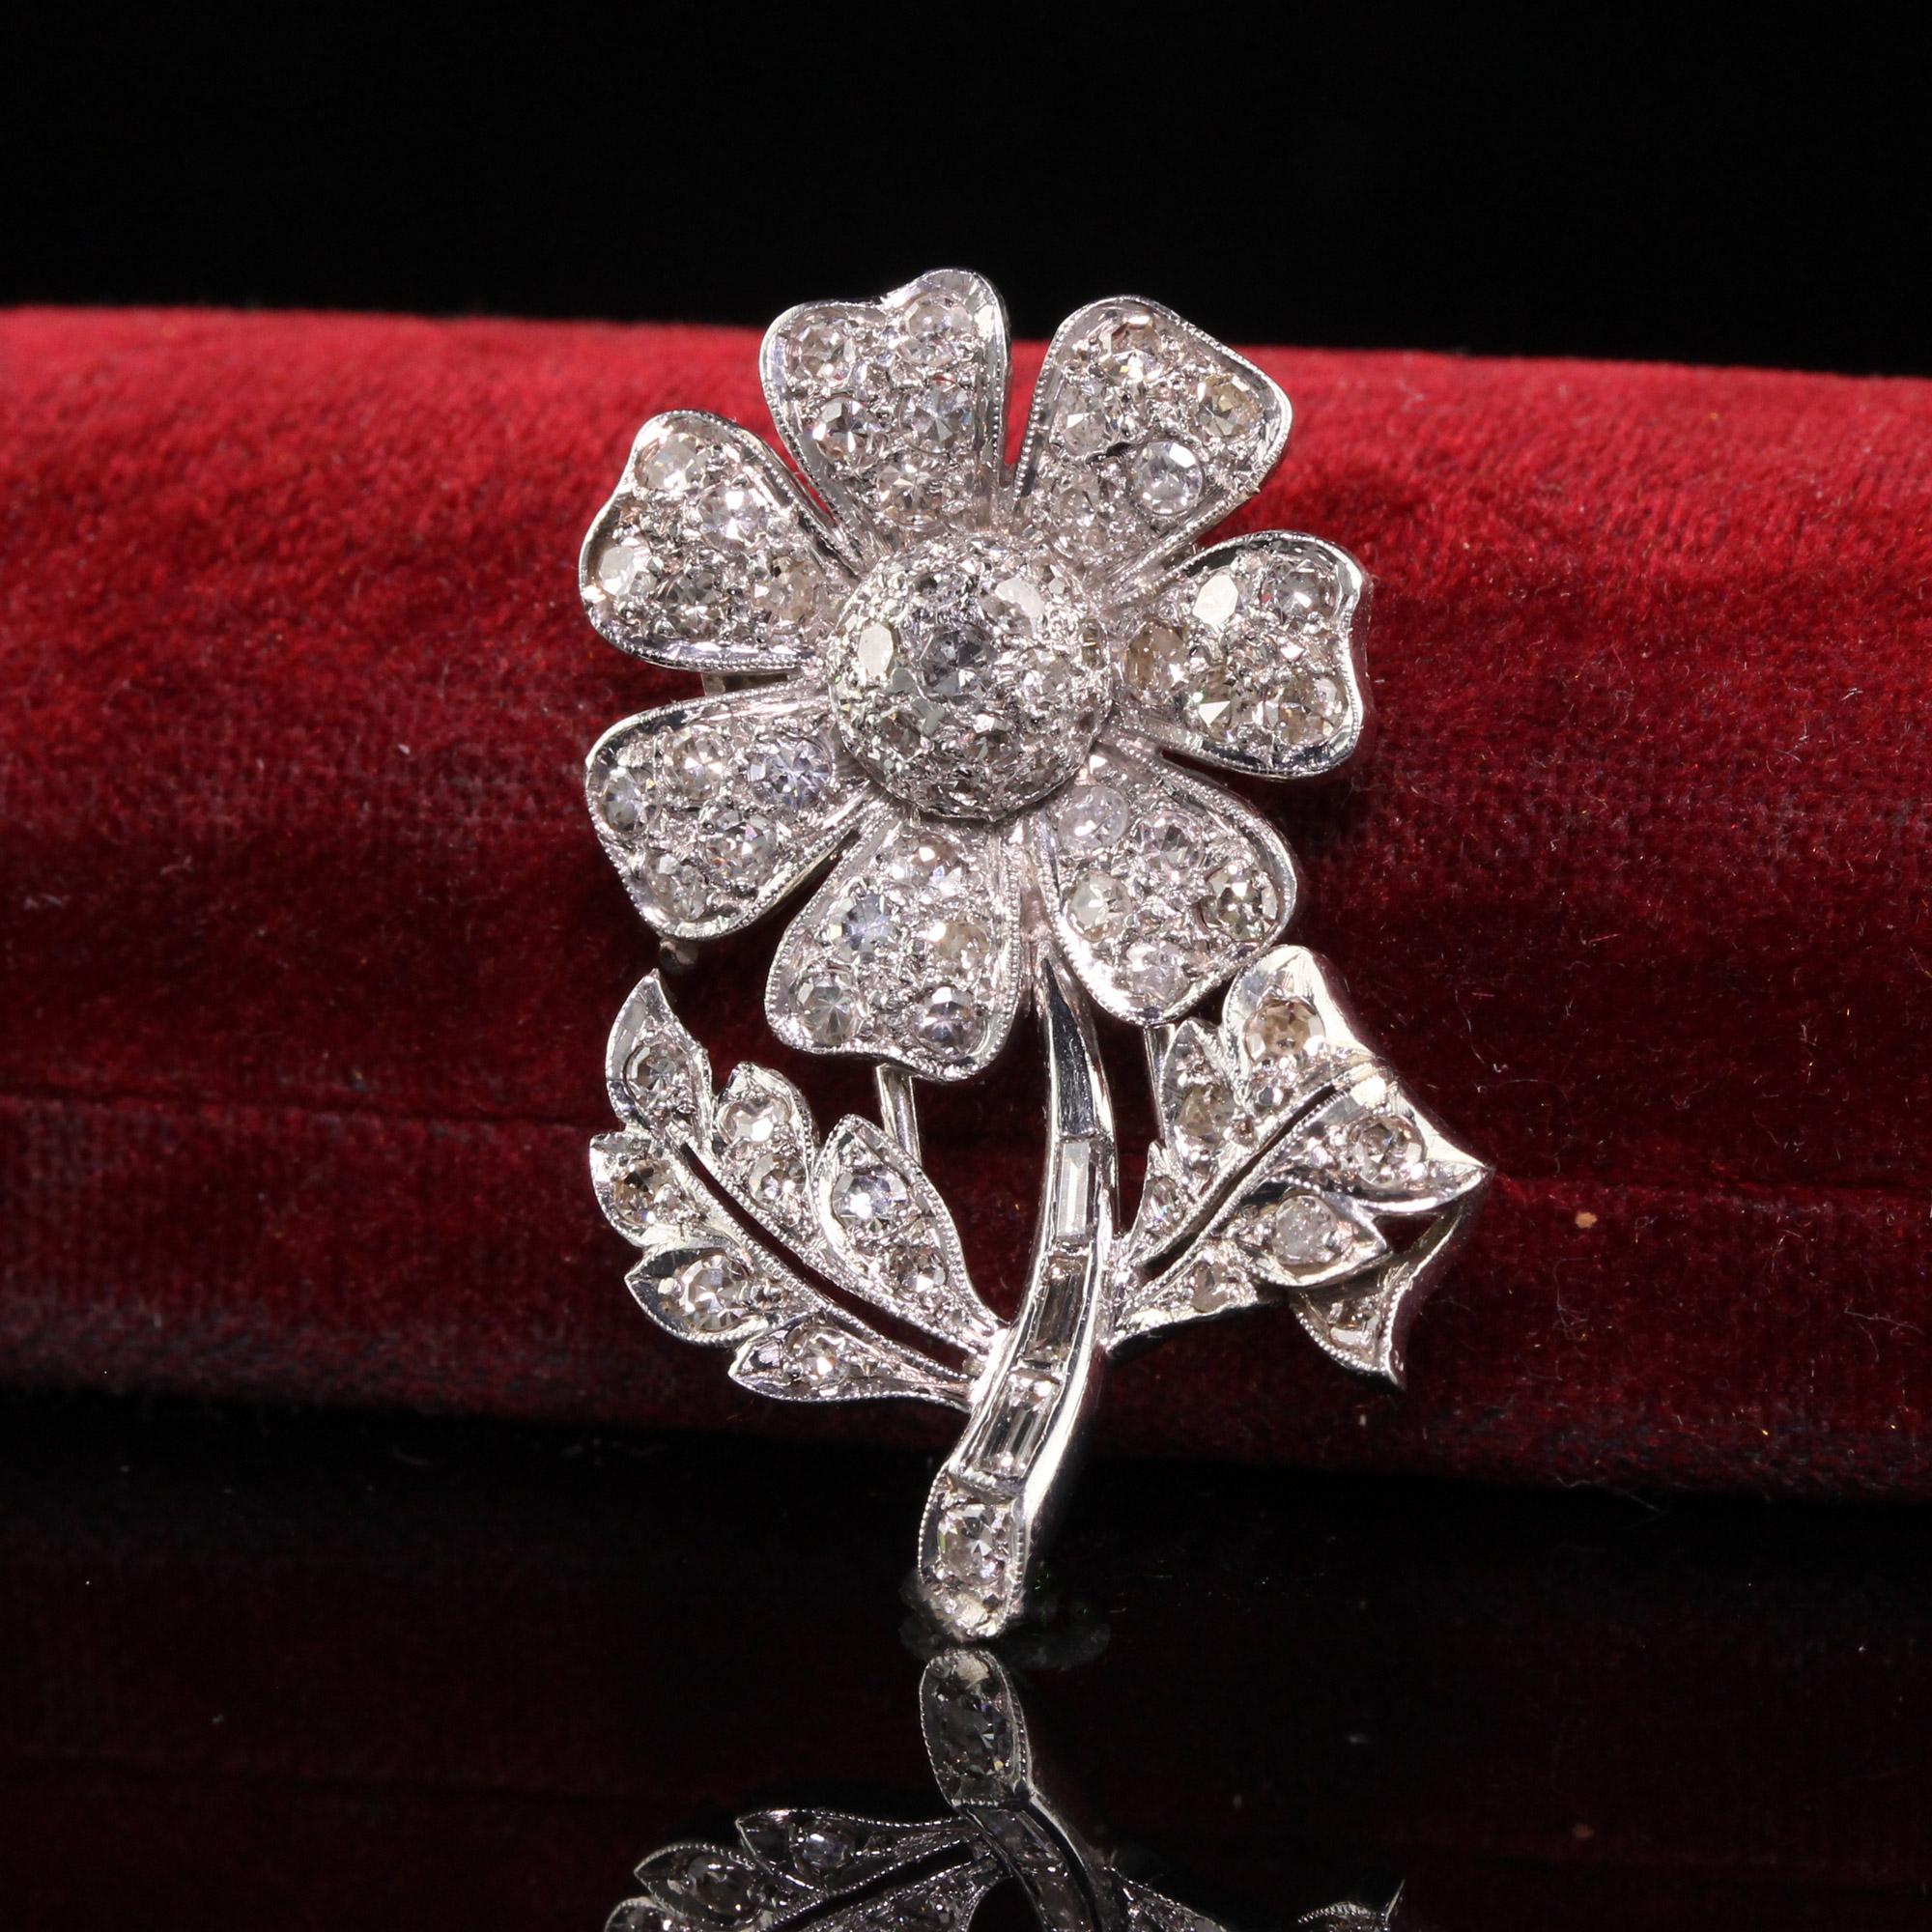 Belle épingle ancienne Art Déco Platine Walser Wald Single Cut Diamond Flower. Cette incroyable broche est fabriquée en platine. La broche est ornée de diamants taille unique sur la fleur et les pétales et de diamants baguette sur la tige. L'épingle